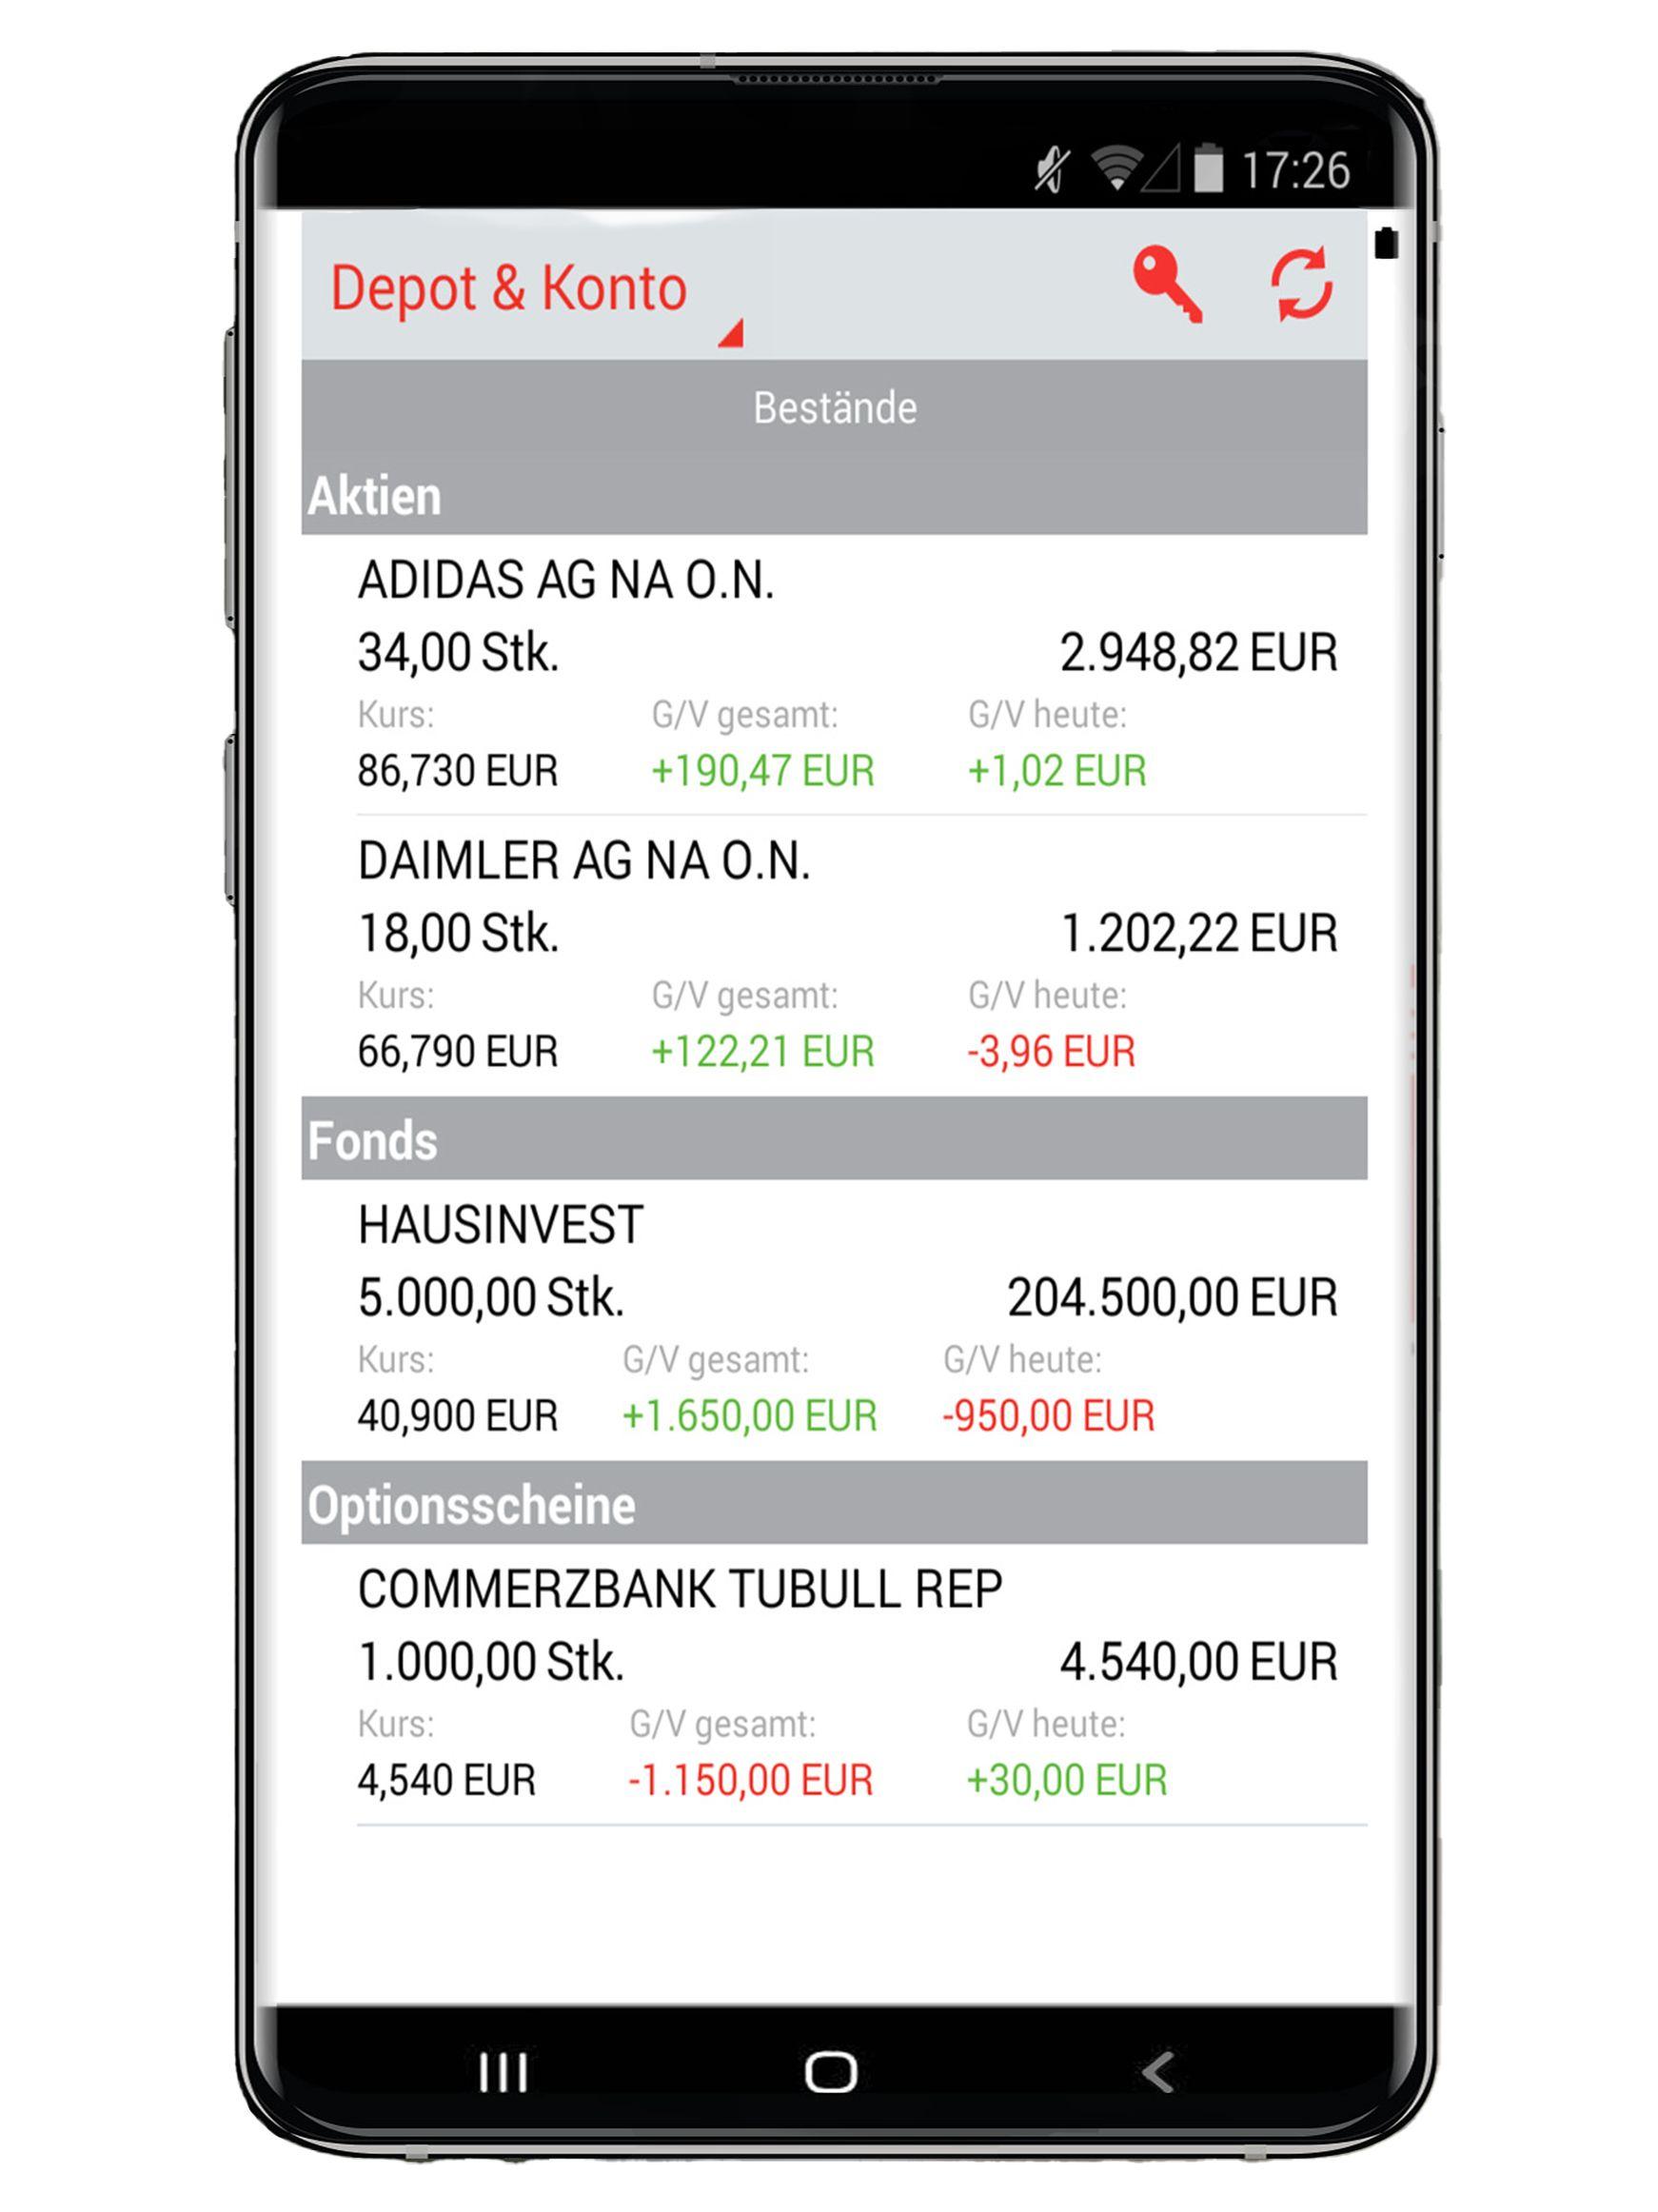 Ein Mock-Up von einem Smartphone-Bildschirm, der Depots und Konten in der S Broker-App der Sparkasse zeigt. Auf dem Display sind die Einlagen bei Aktien, Fonds und Optionsscheinen zu sehen.